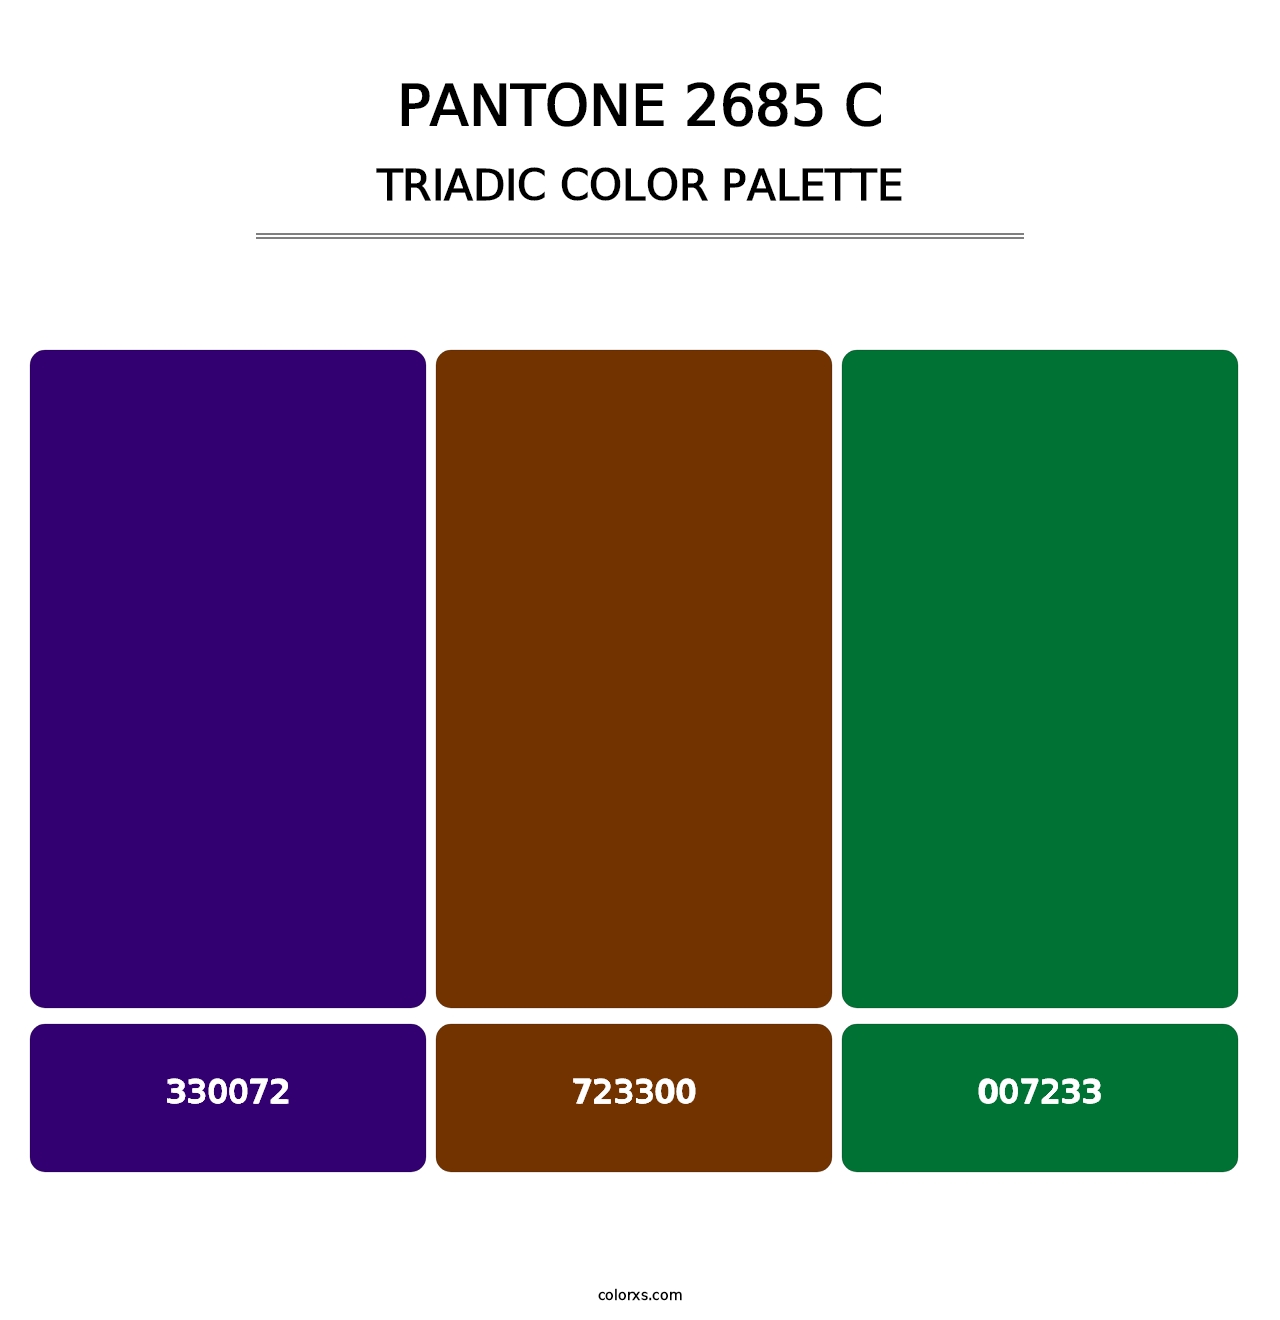 PANTONE 2685 C - Triadic Color Palette